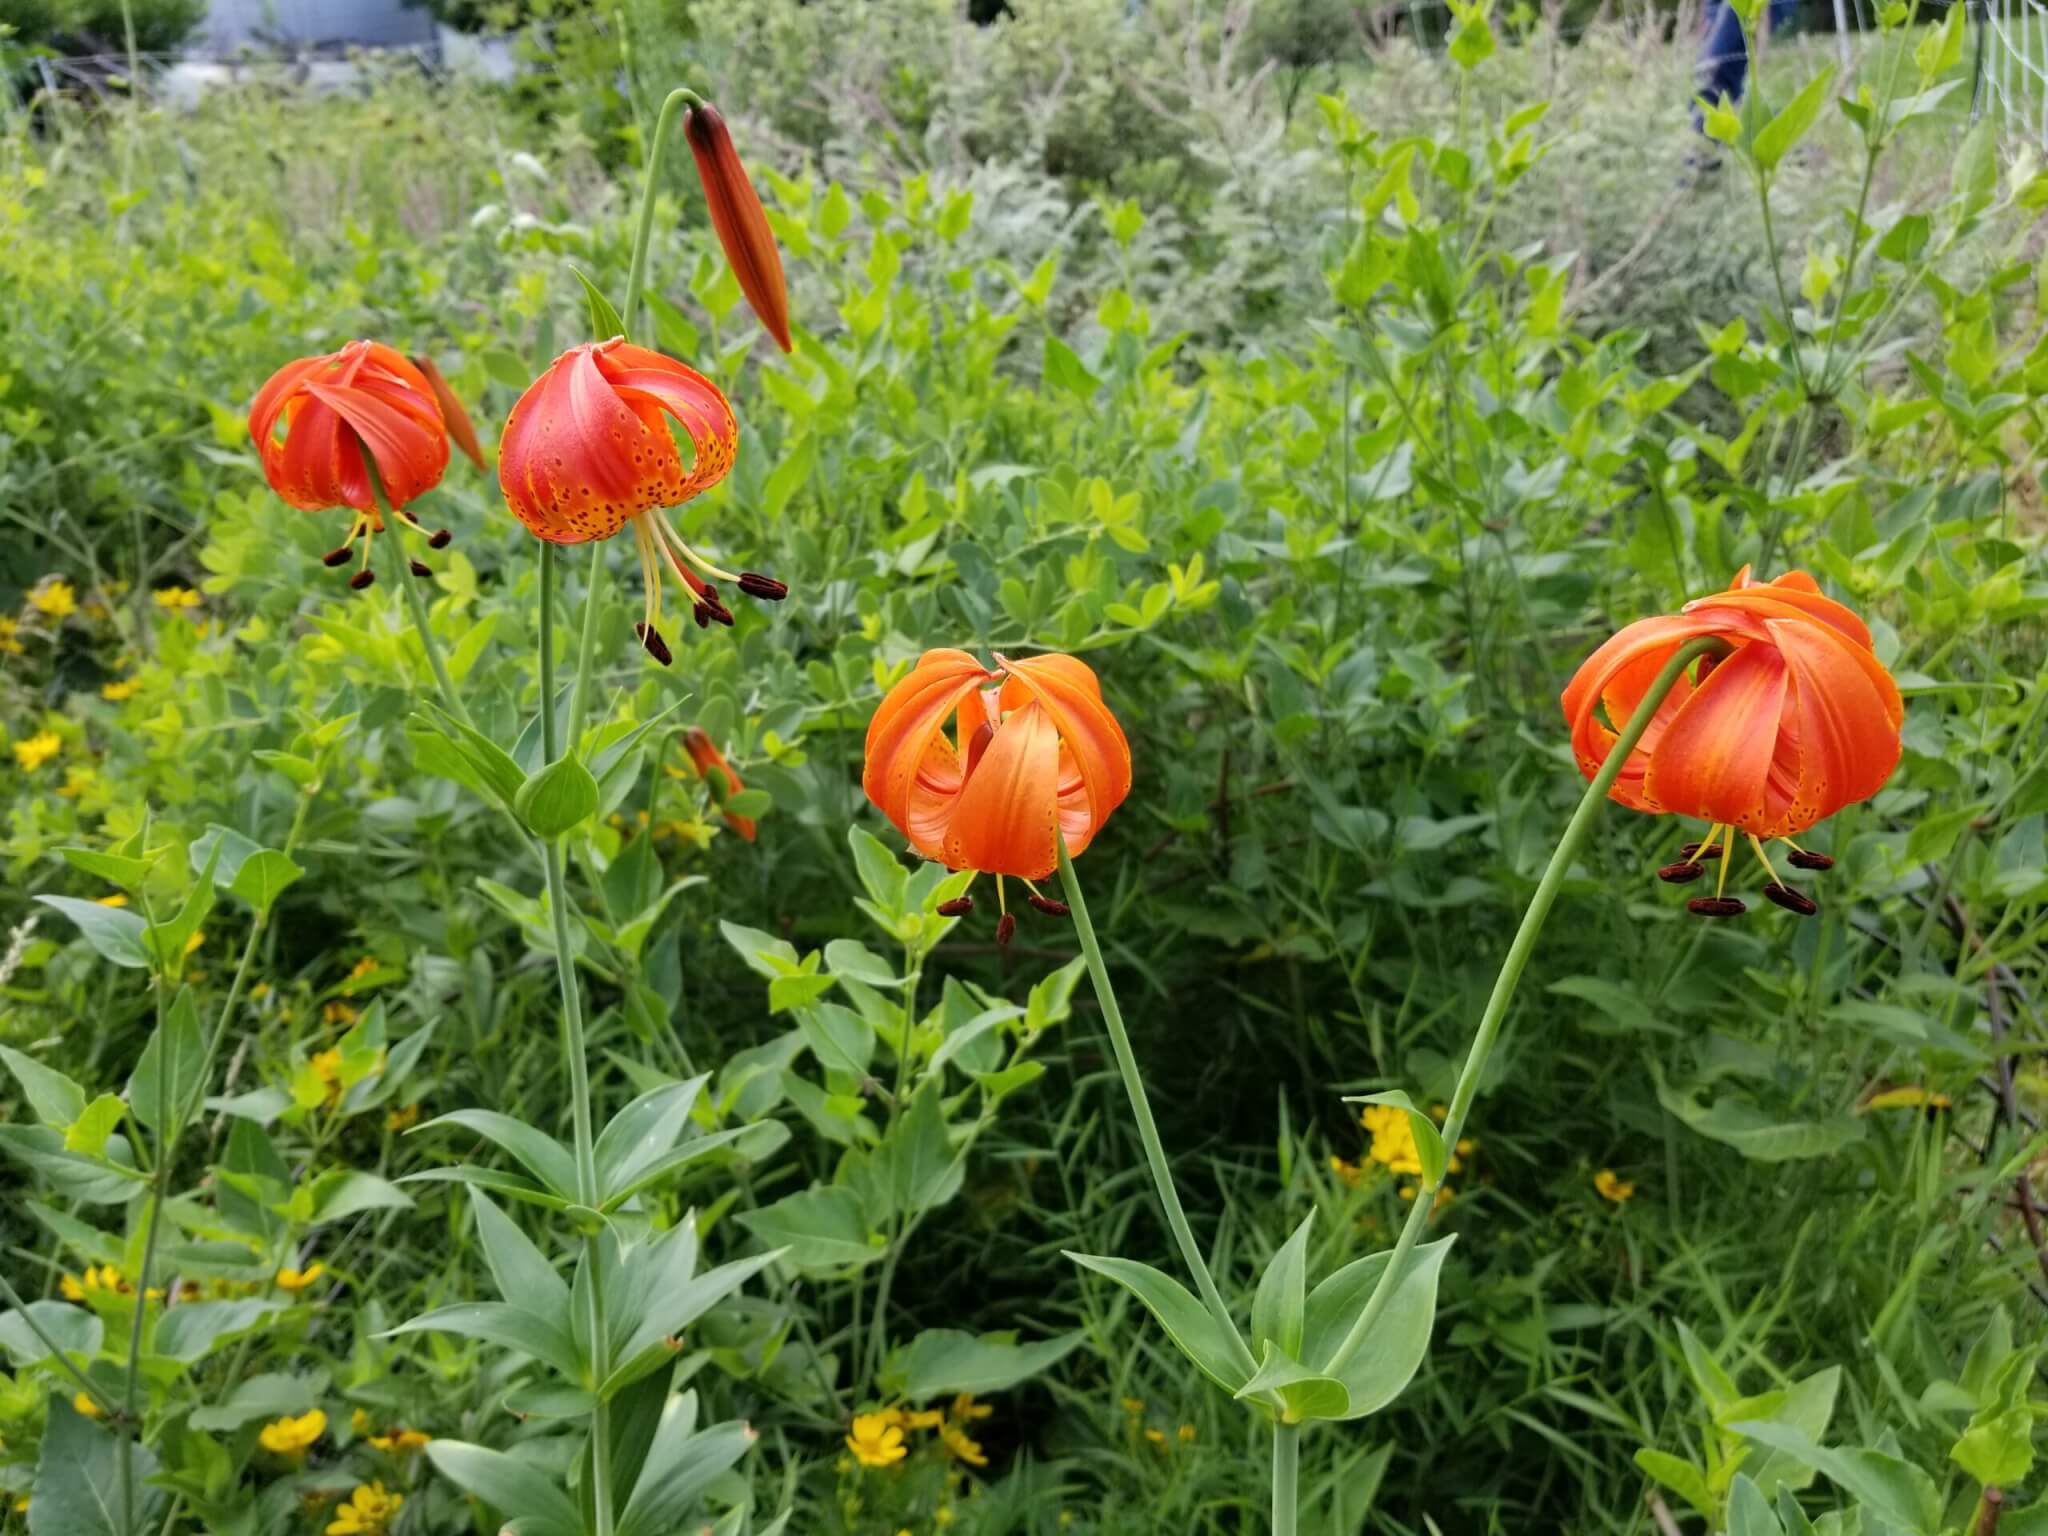 Orange flower amongst greenery at Engeldinger Marsh